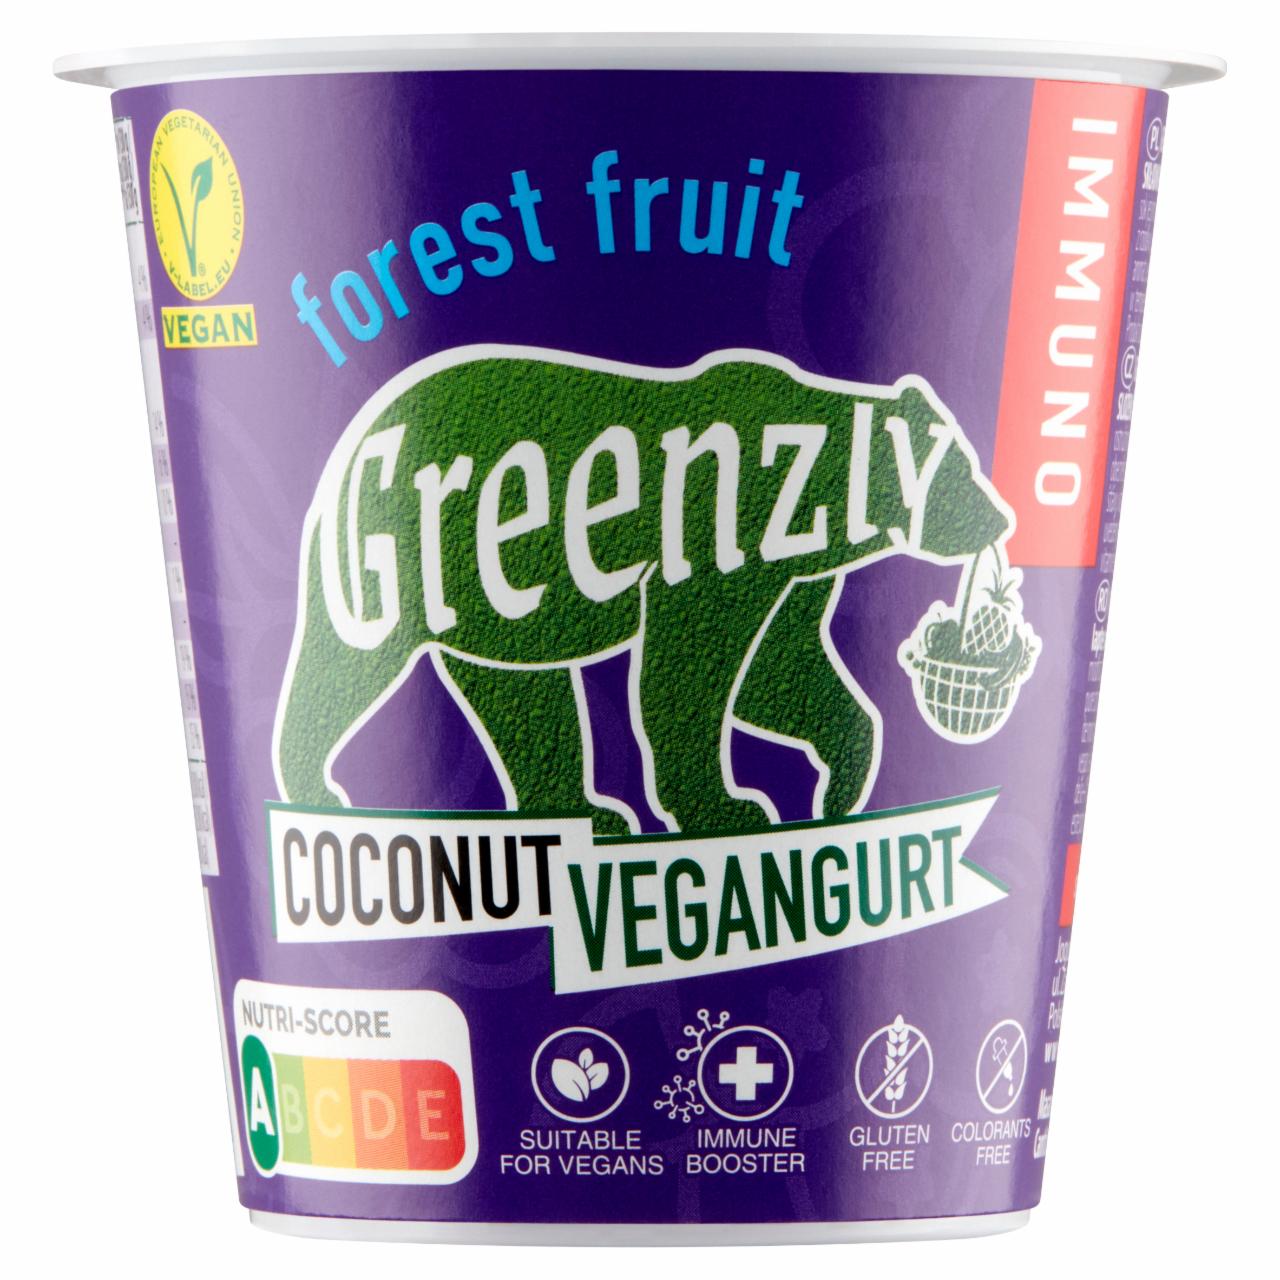 Zdjęcia - Greenzly Kokosowy vegangurt owoce leśne 130 g